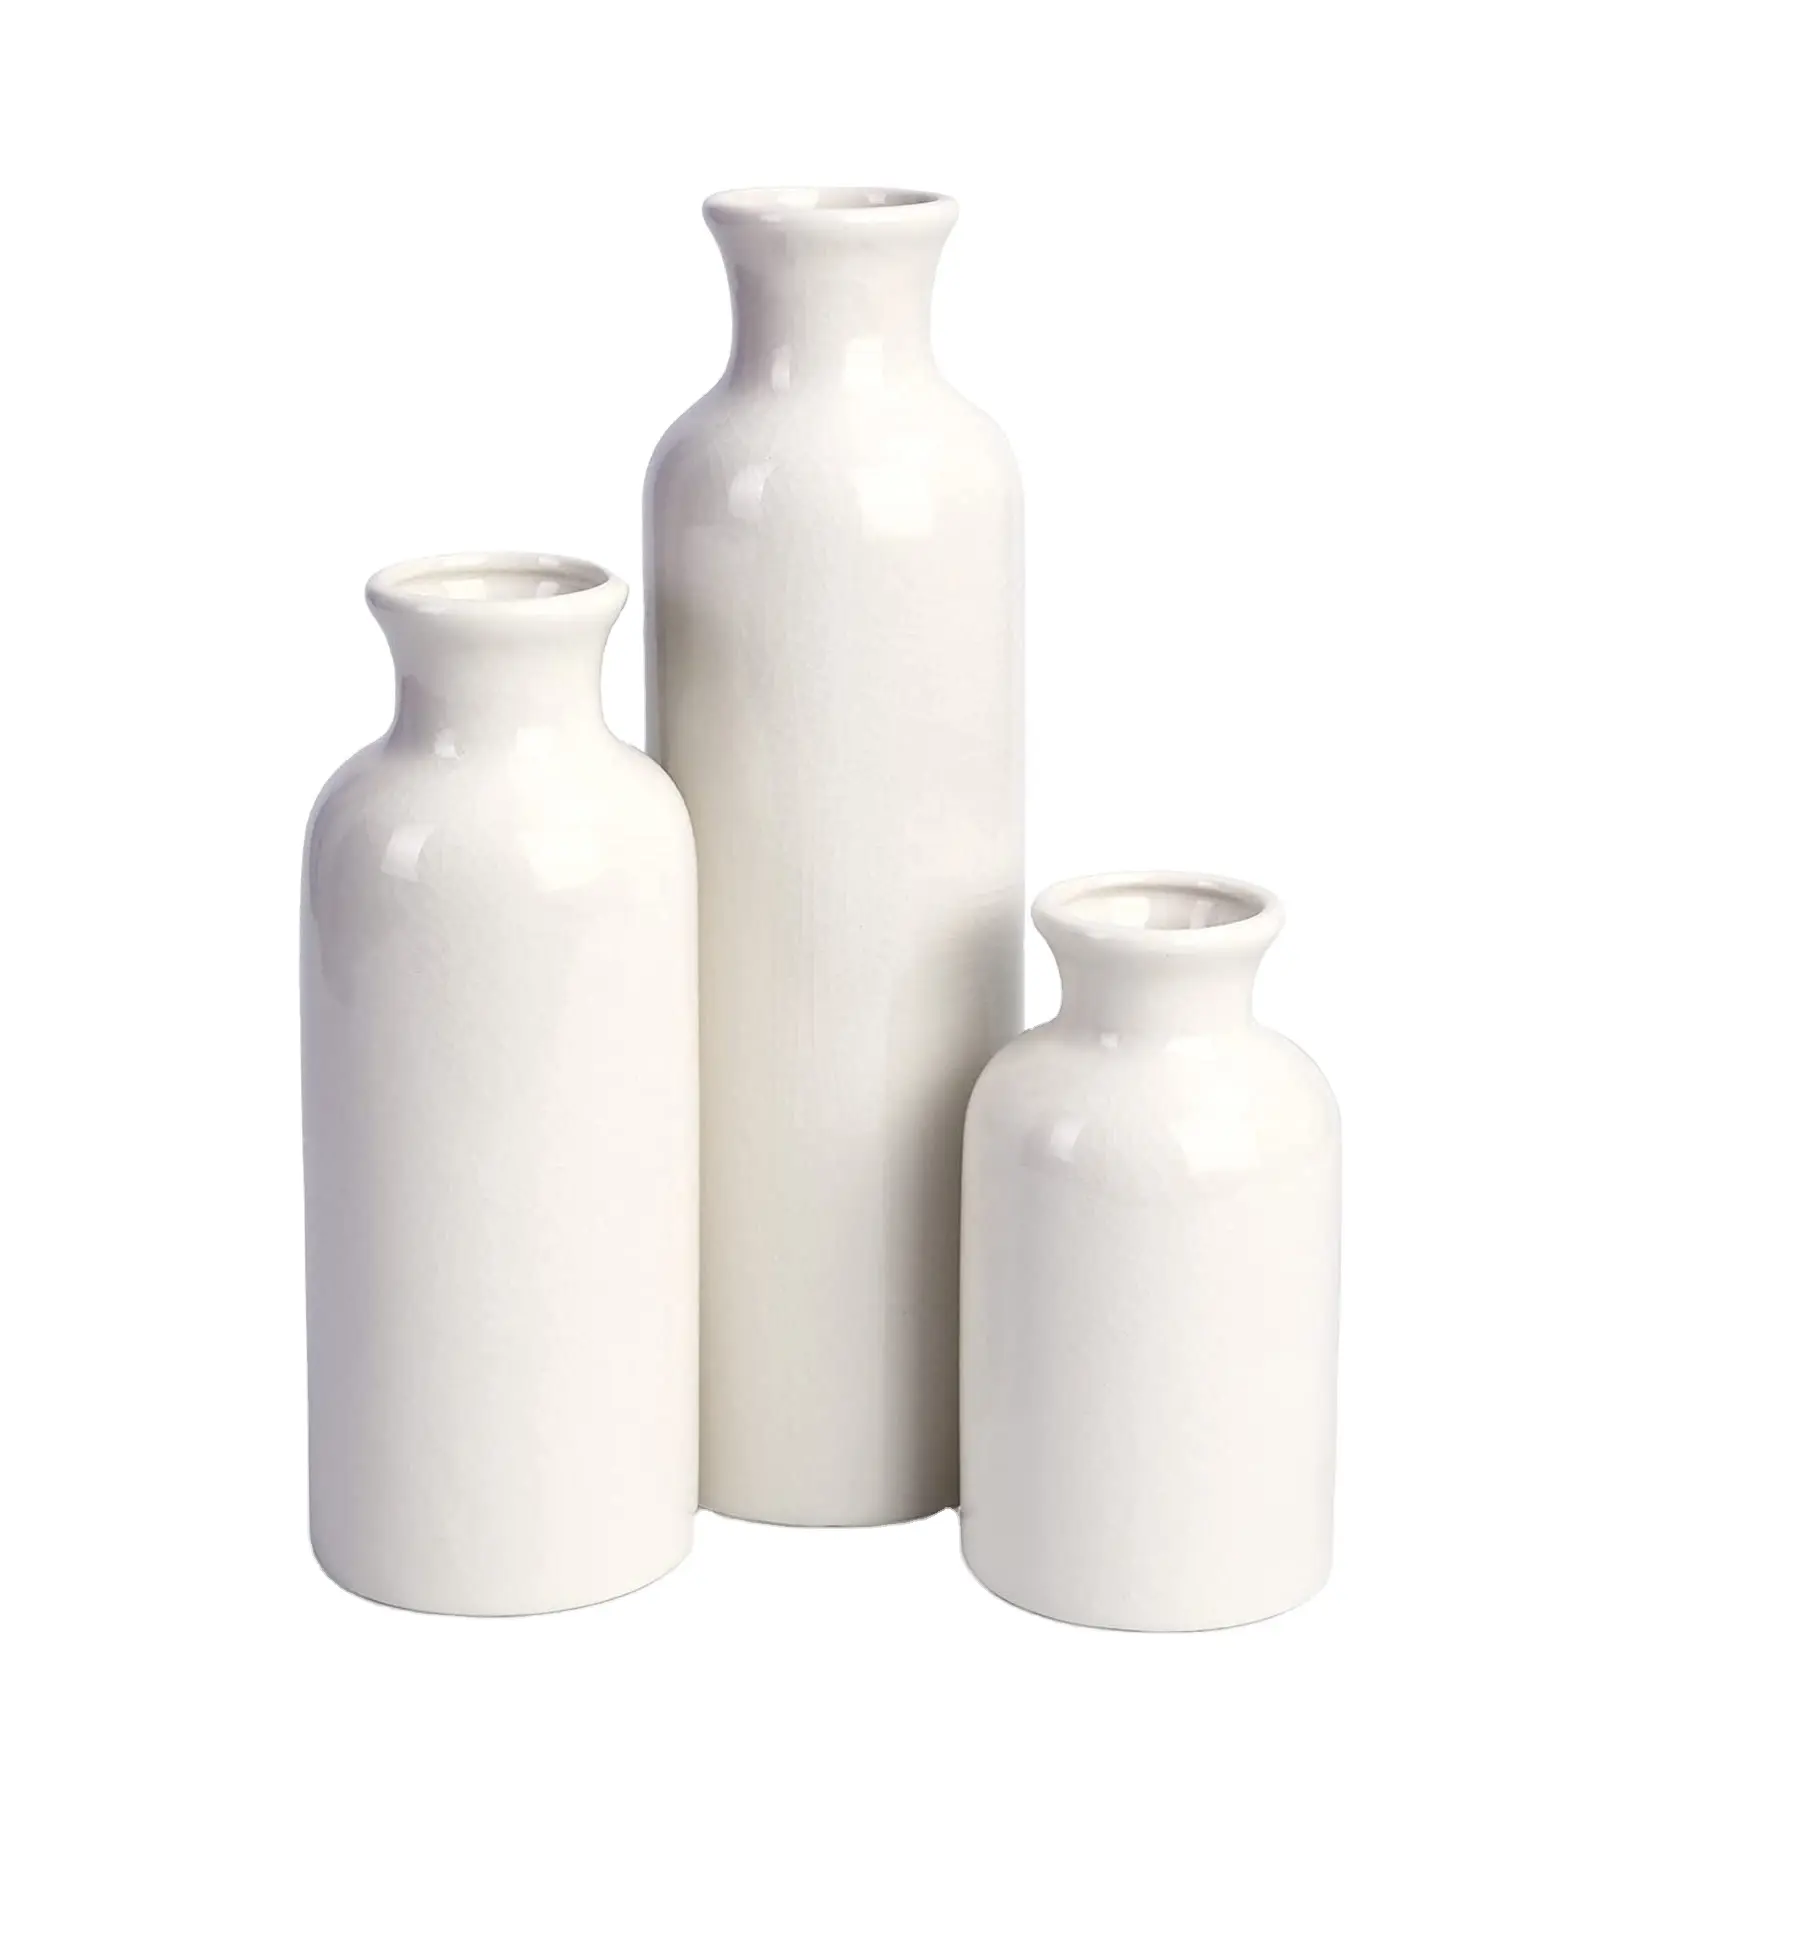 Amazon Best Seller Farmhouse White Vases for Decor Set of 3 Ceramic Vase Handmade Decorative Vases for Home Decor